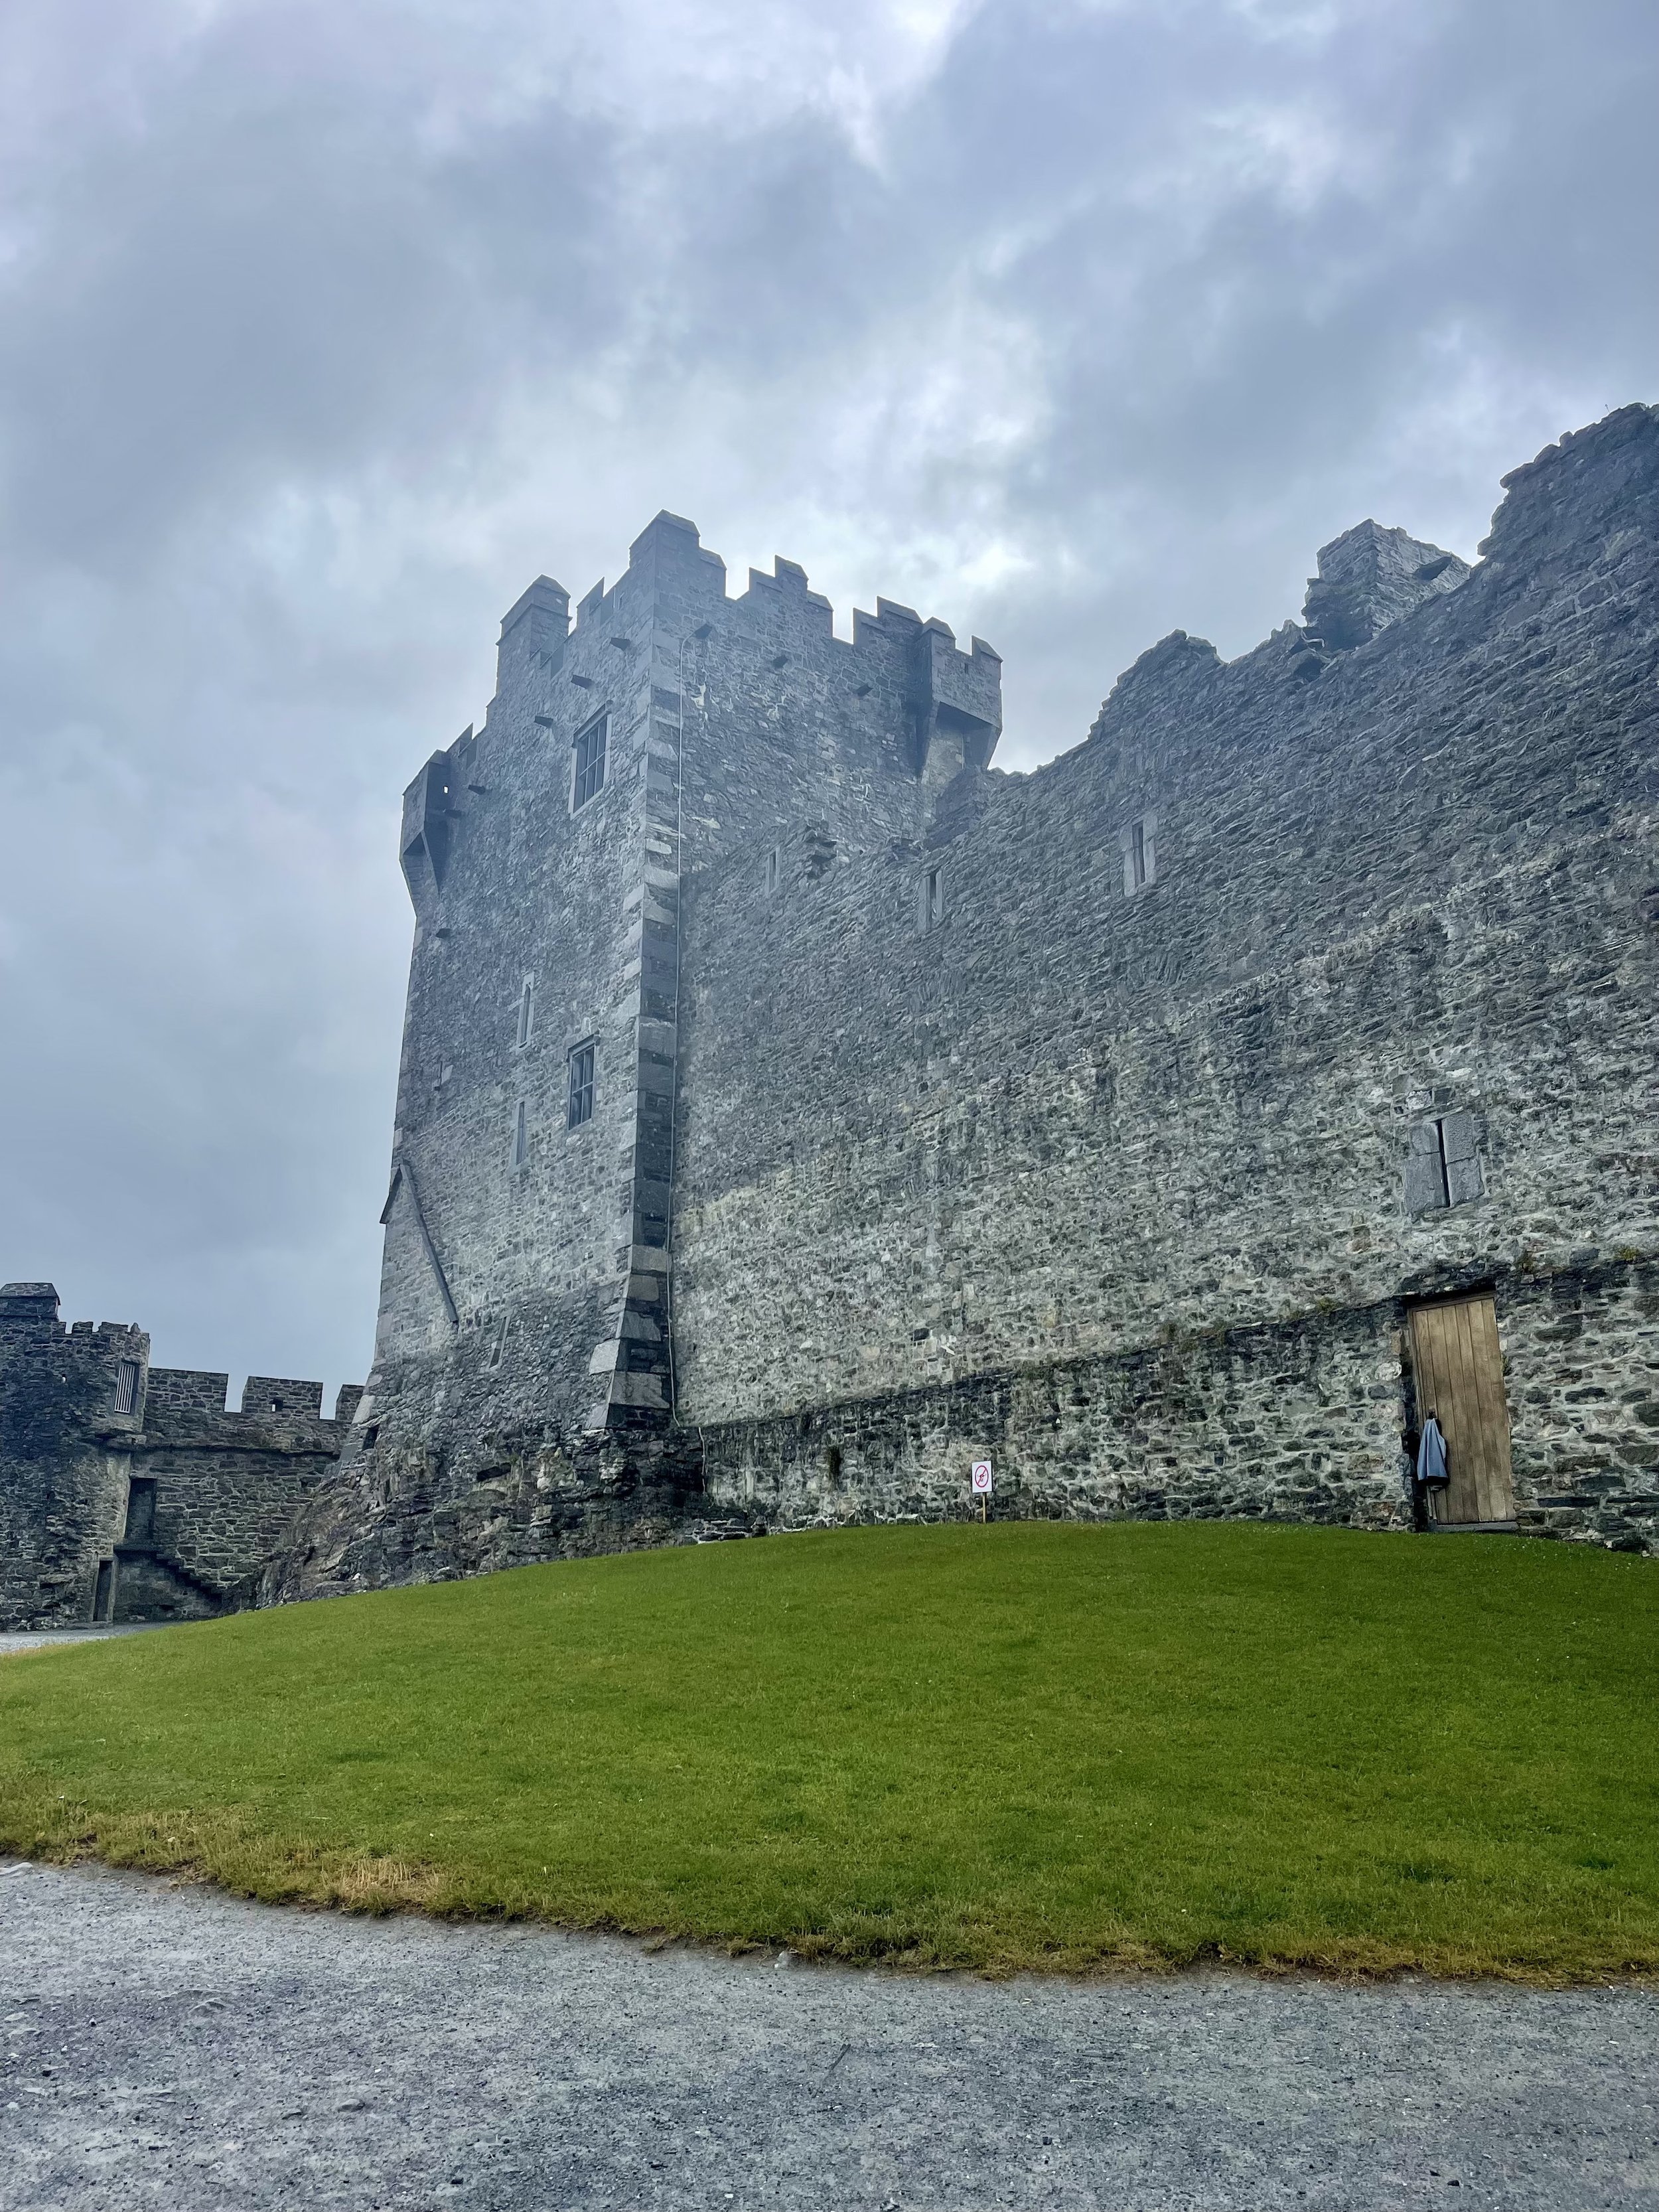 Ross Castle - castle in Killarney Ireland